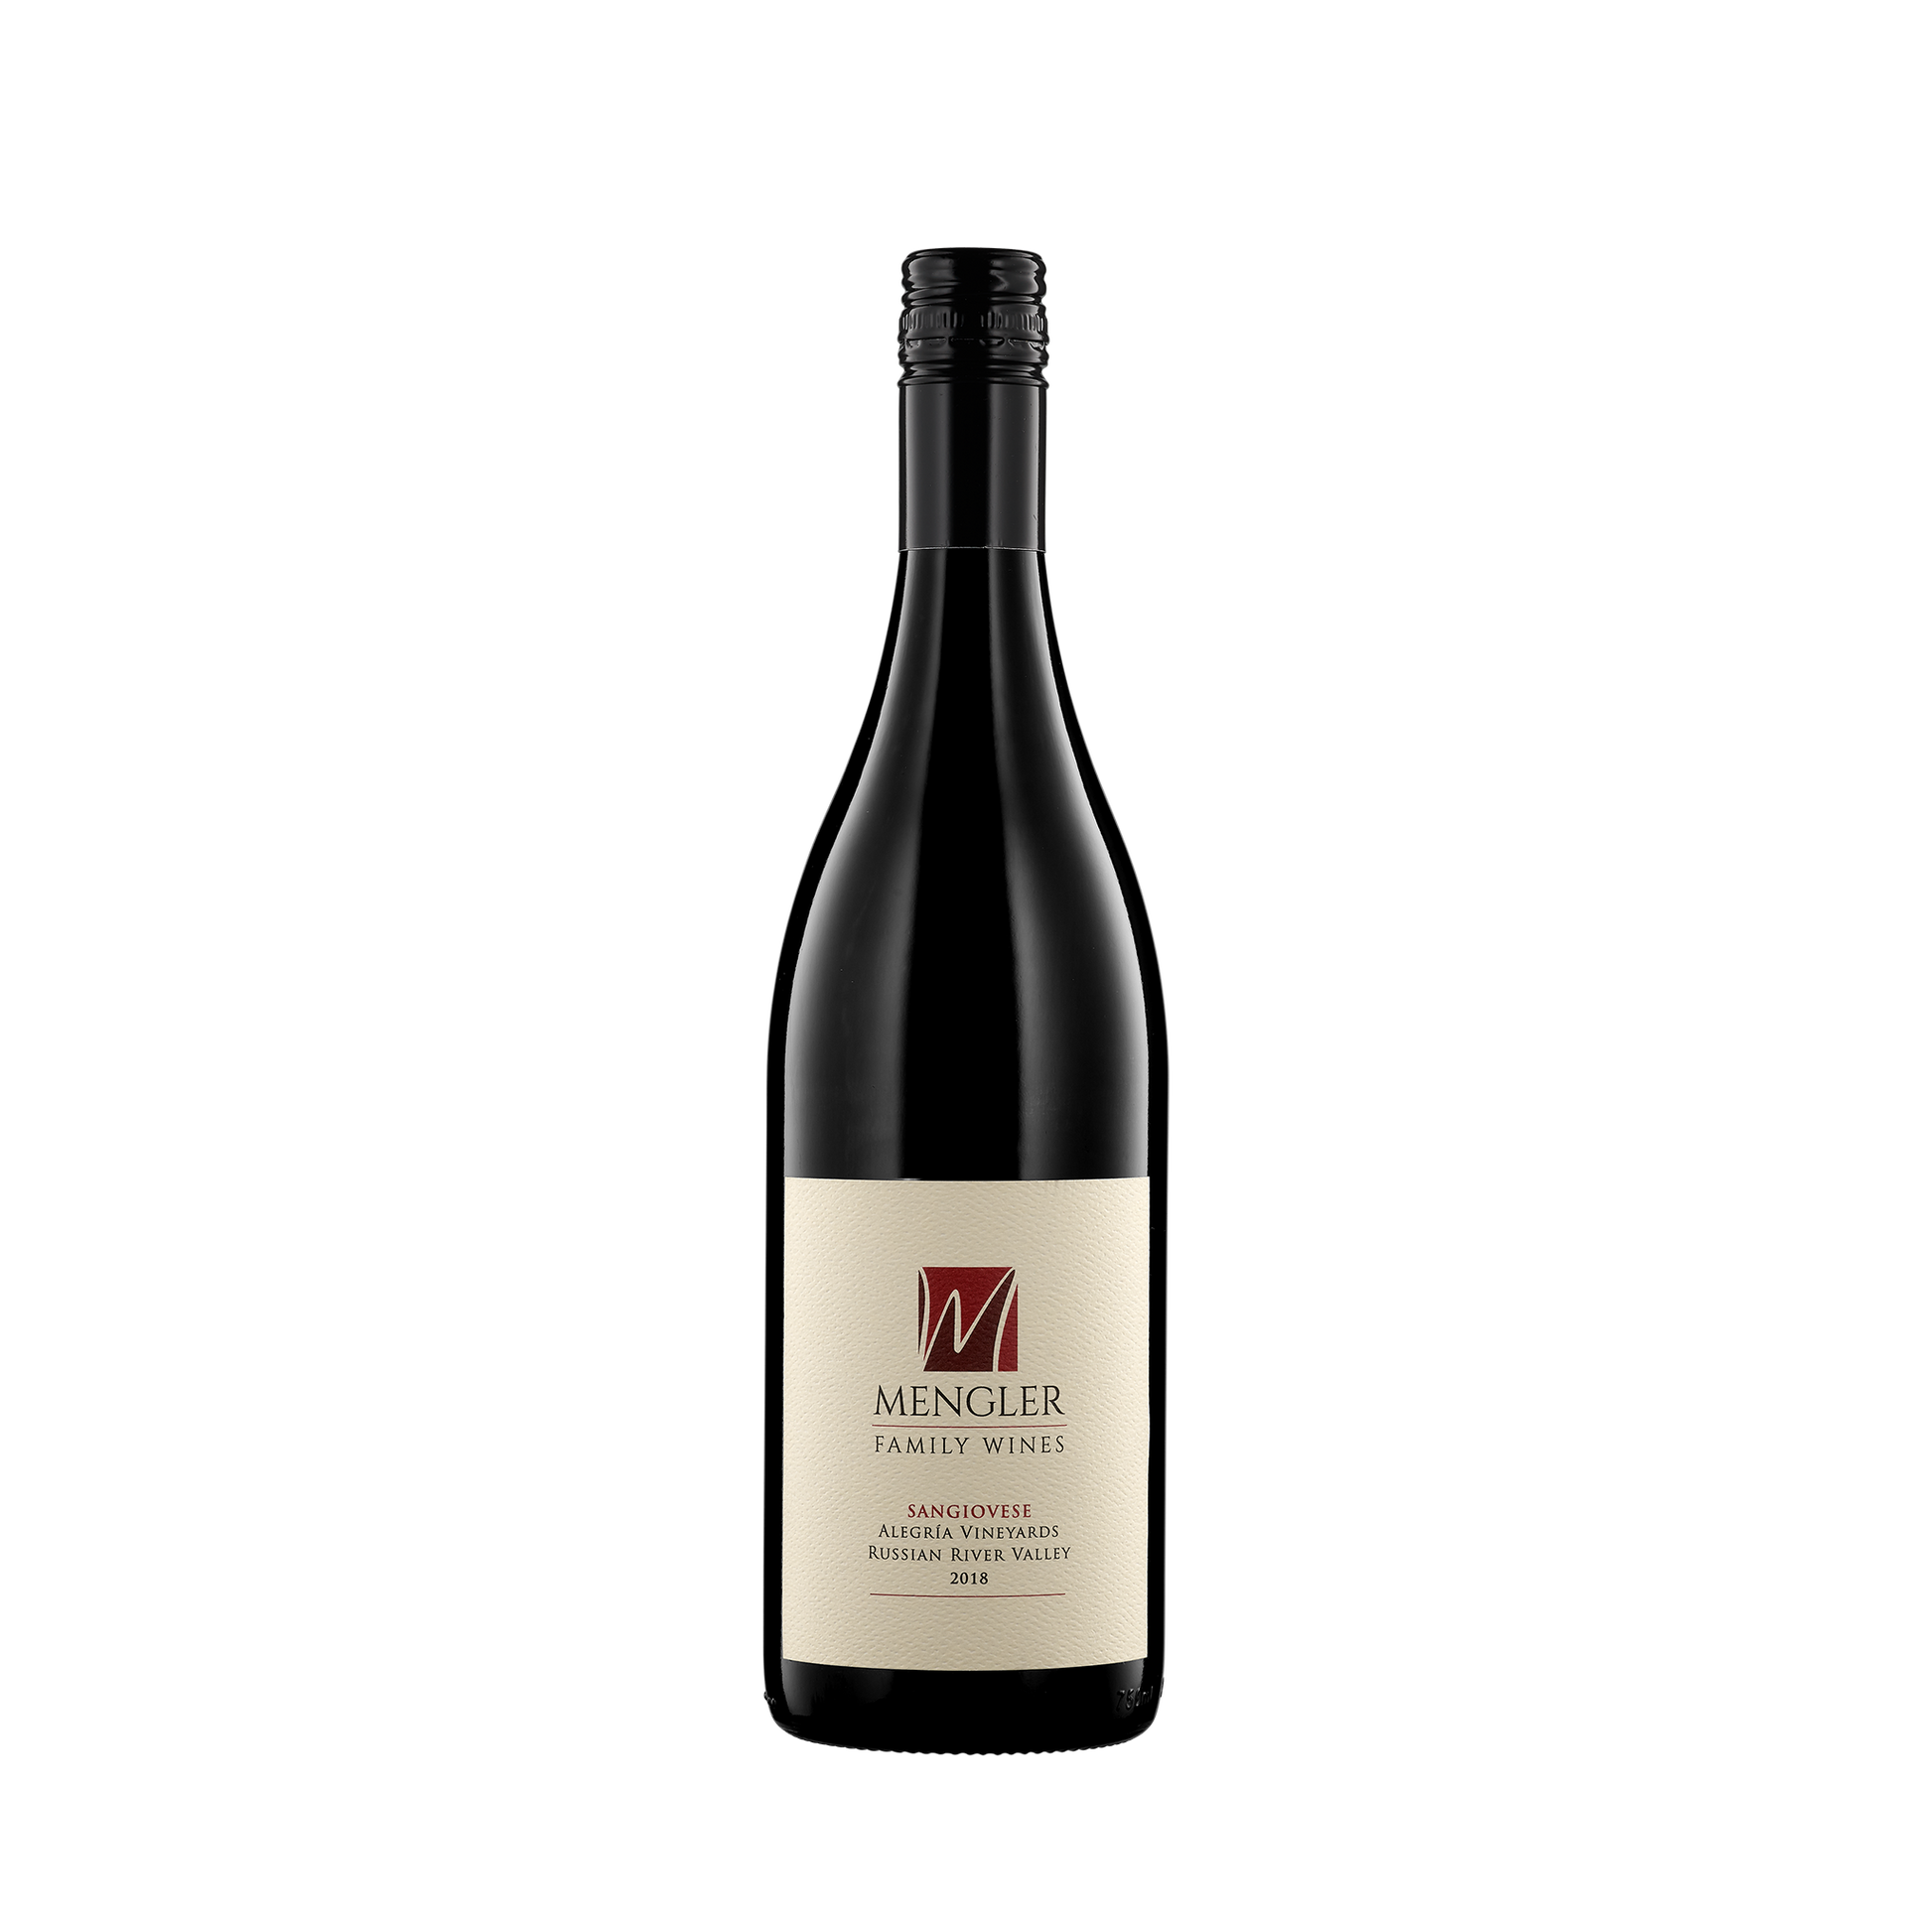 A bottle of Mengler Family Wines 2018 Sangiovese